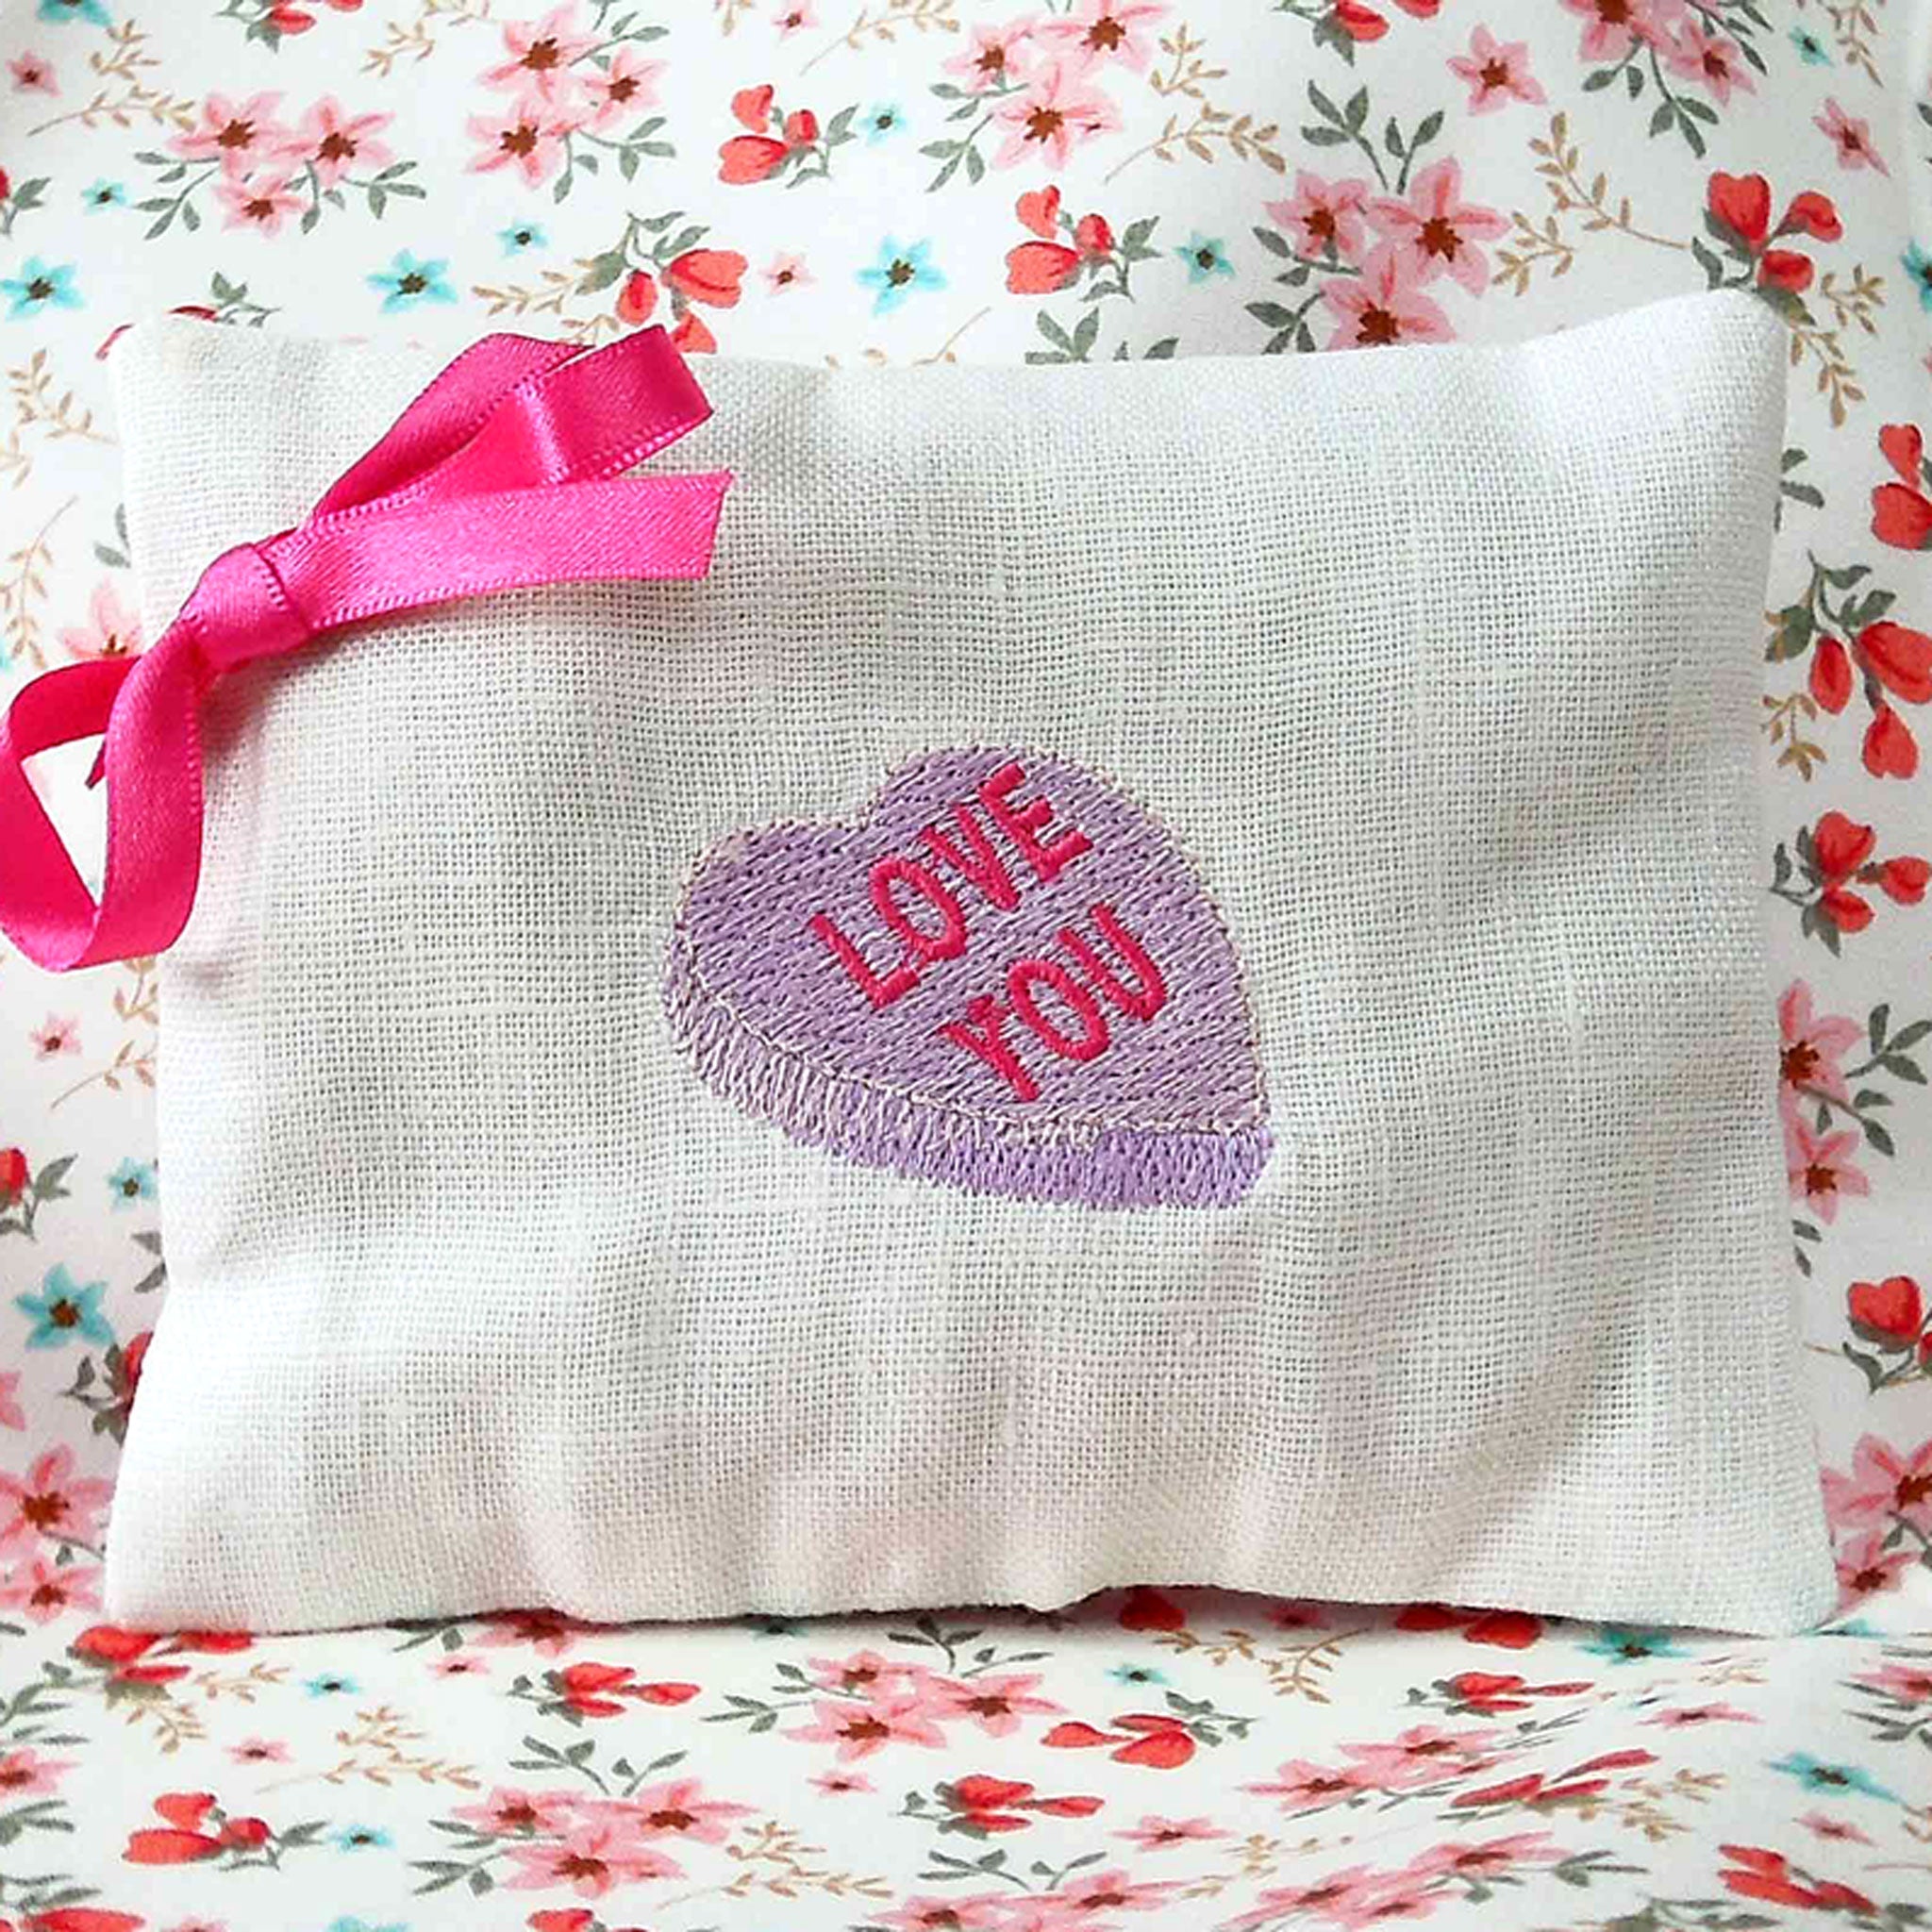 Lavender Love Heart Sachet - Love You - Handmade in White Linen